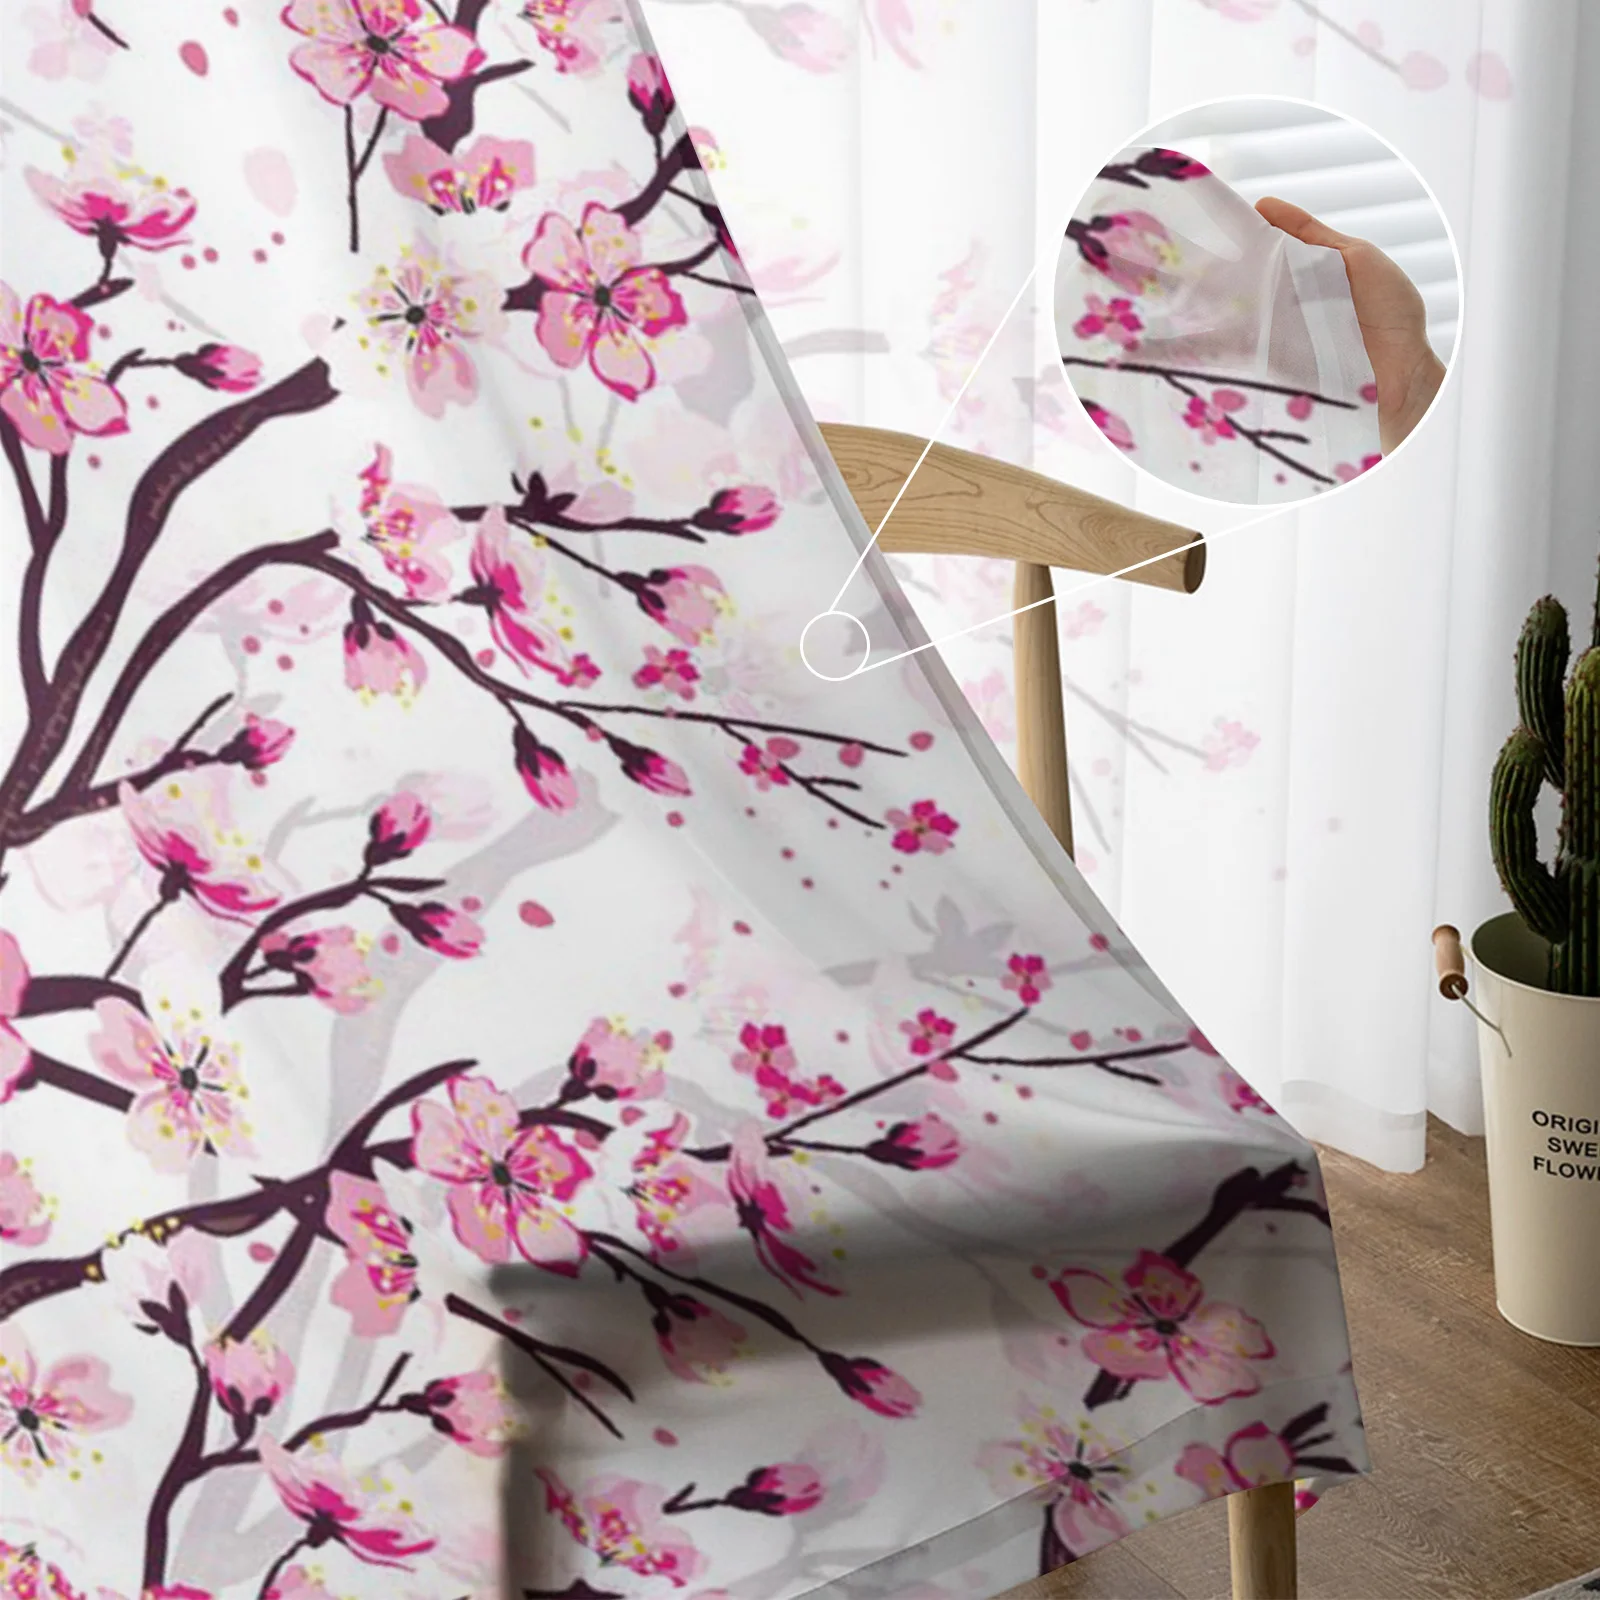 Японская вишня, ветки сливы, Розово-белый цветок, прозрачные занавески для гостиной, Тюлевые окна, Короткие занавески из вуалевой пряжи. 4